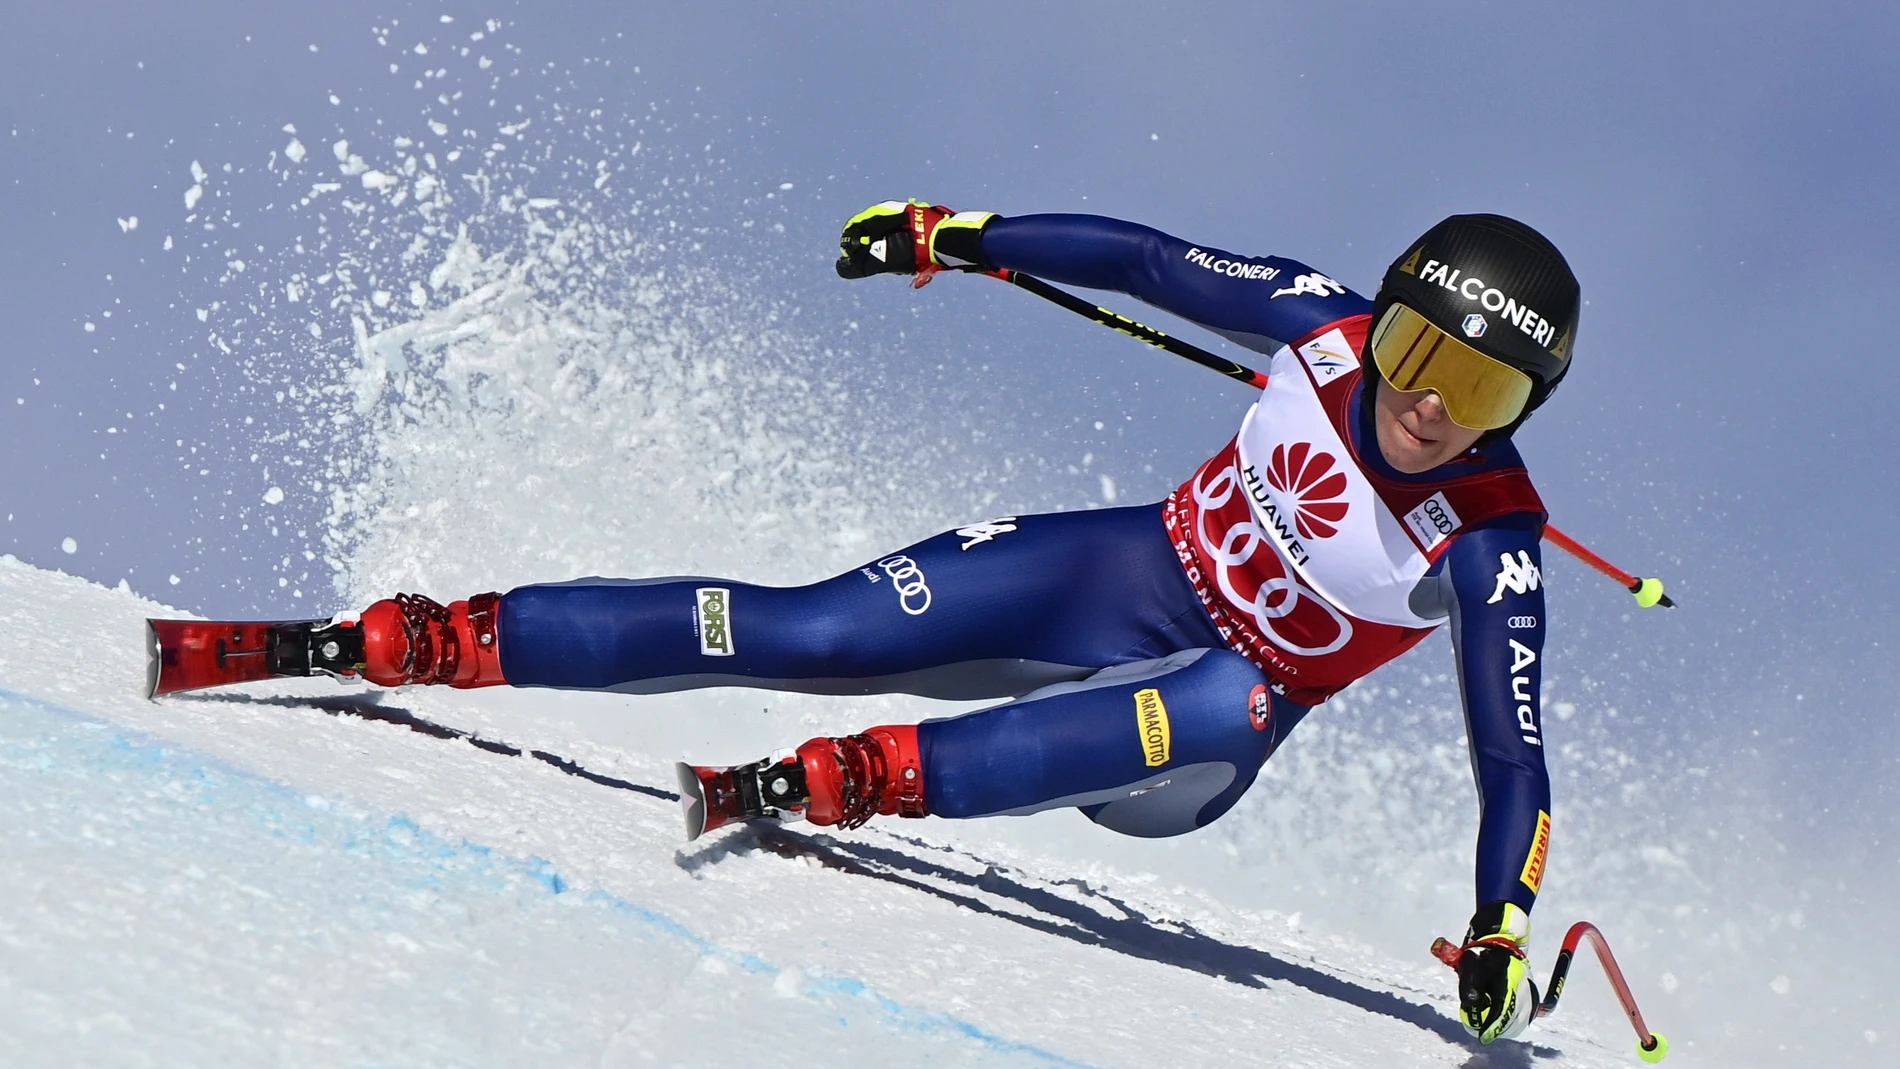 Crans-montana (Suiza), 22/01/2021.- Sofia Goggia en acción durante la carrera de descenso femenino de la Copa del Mundo de Esquí Alpino FIS en Crans-Montana, Suiza, el 22 de enero de 2021. EFE/EPA/JEAN-CHRISTOPHE BOTT